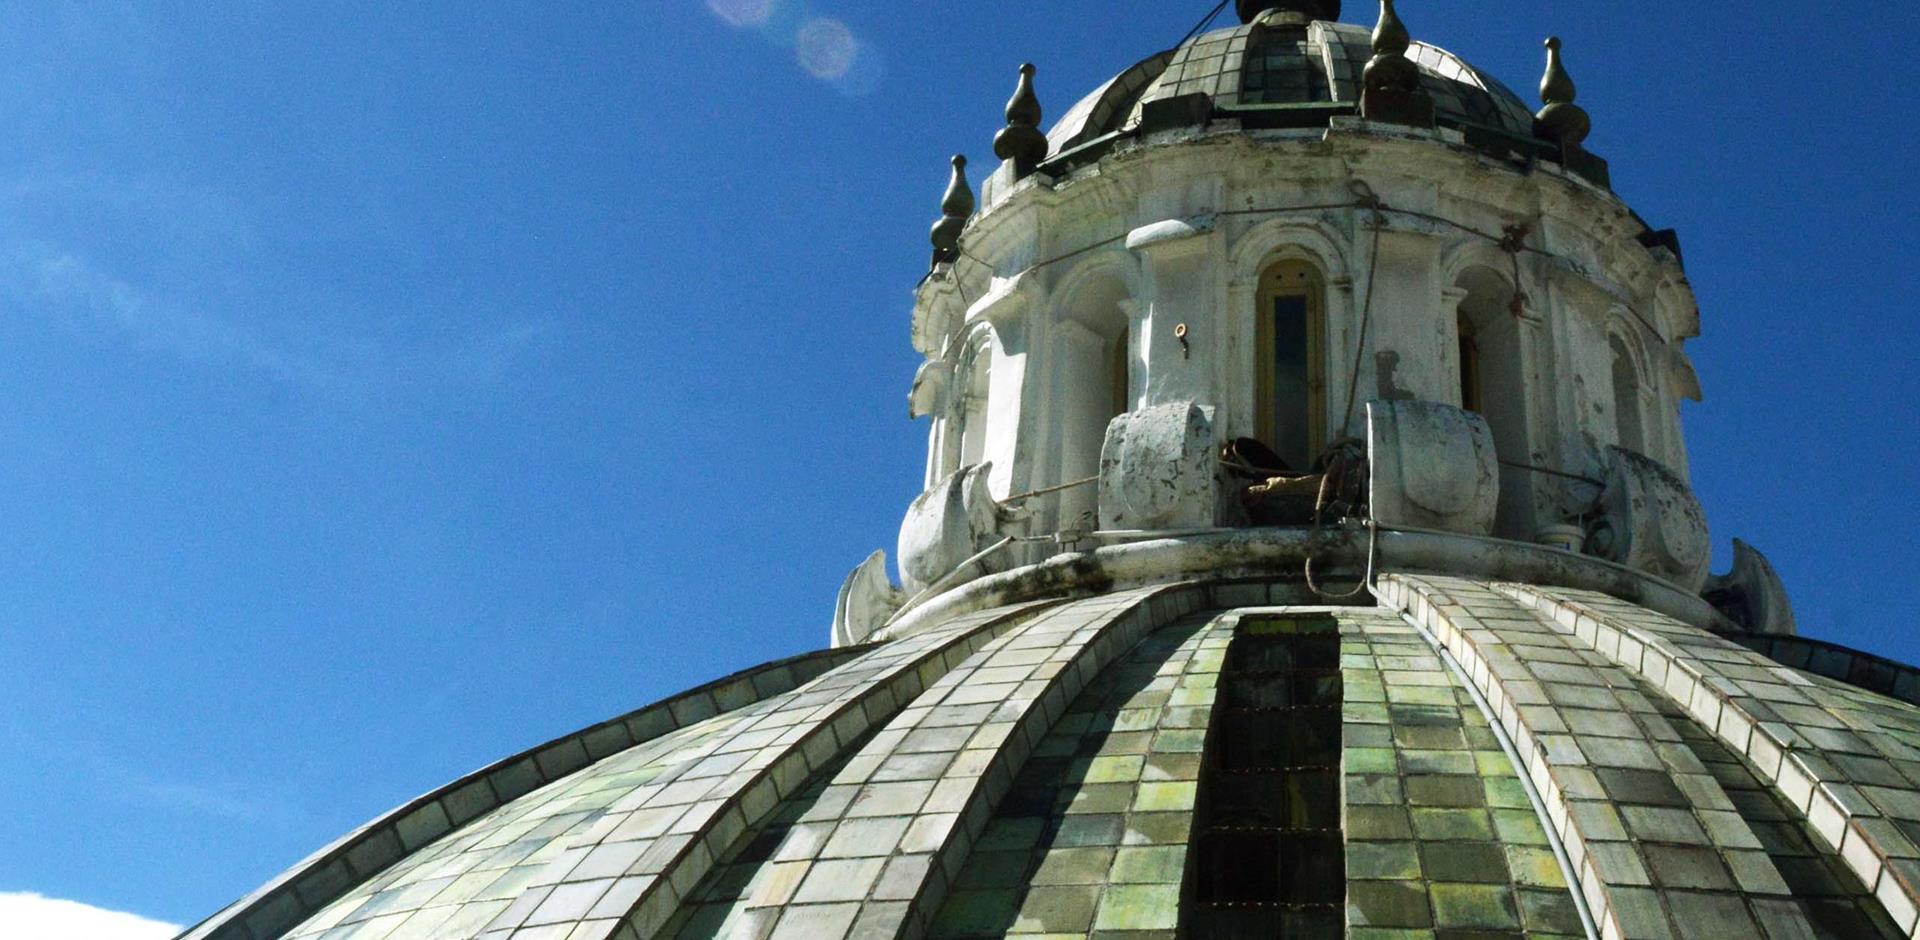 Quito La Compaa Church Roof Domes